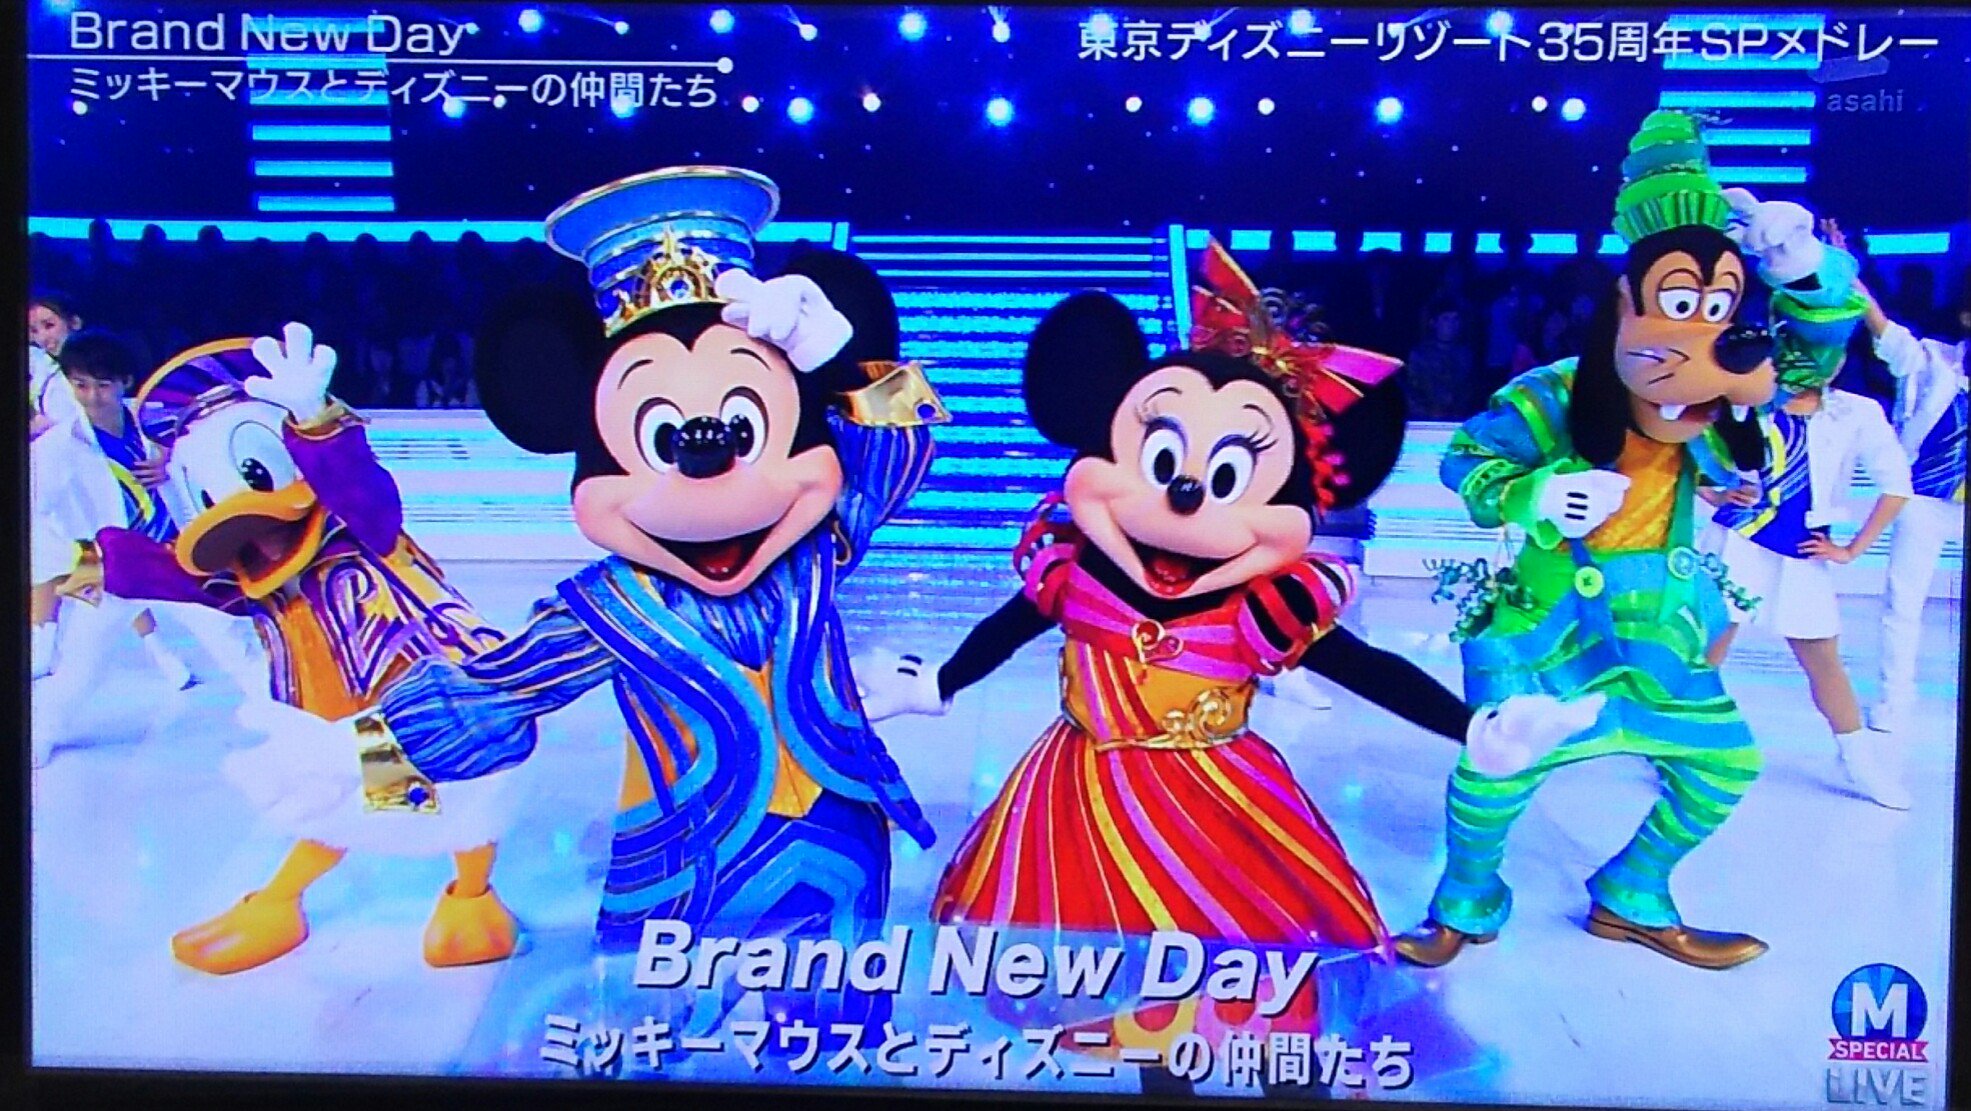 Twitter 上的 Ryoko Onda Mステのディズニー良かった ダッフィーやシェリーメイちゃんも出てくれて嬉しい Brand New Dayが聴けて嬉しい Mステ Tdl 東京ディズニーリゾート35周年 ディズニー 35周年おめでとう Brandnewday T Co